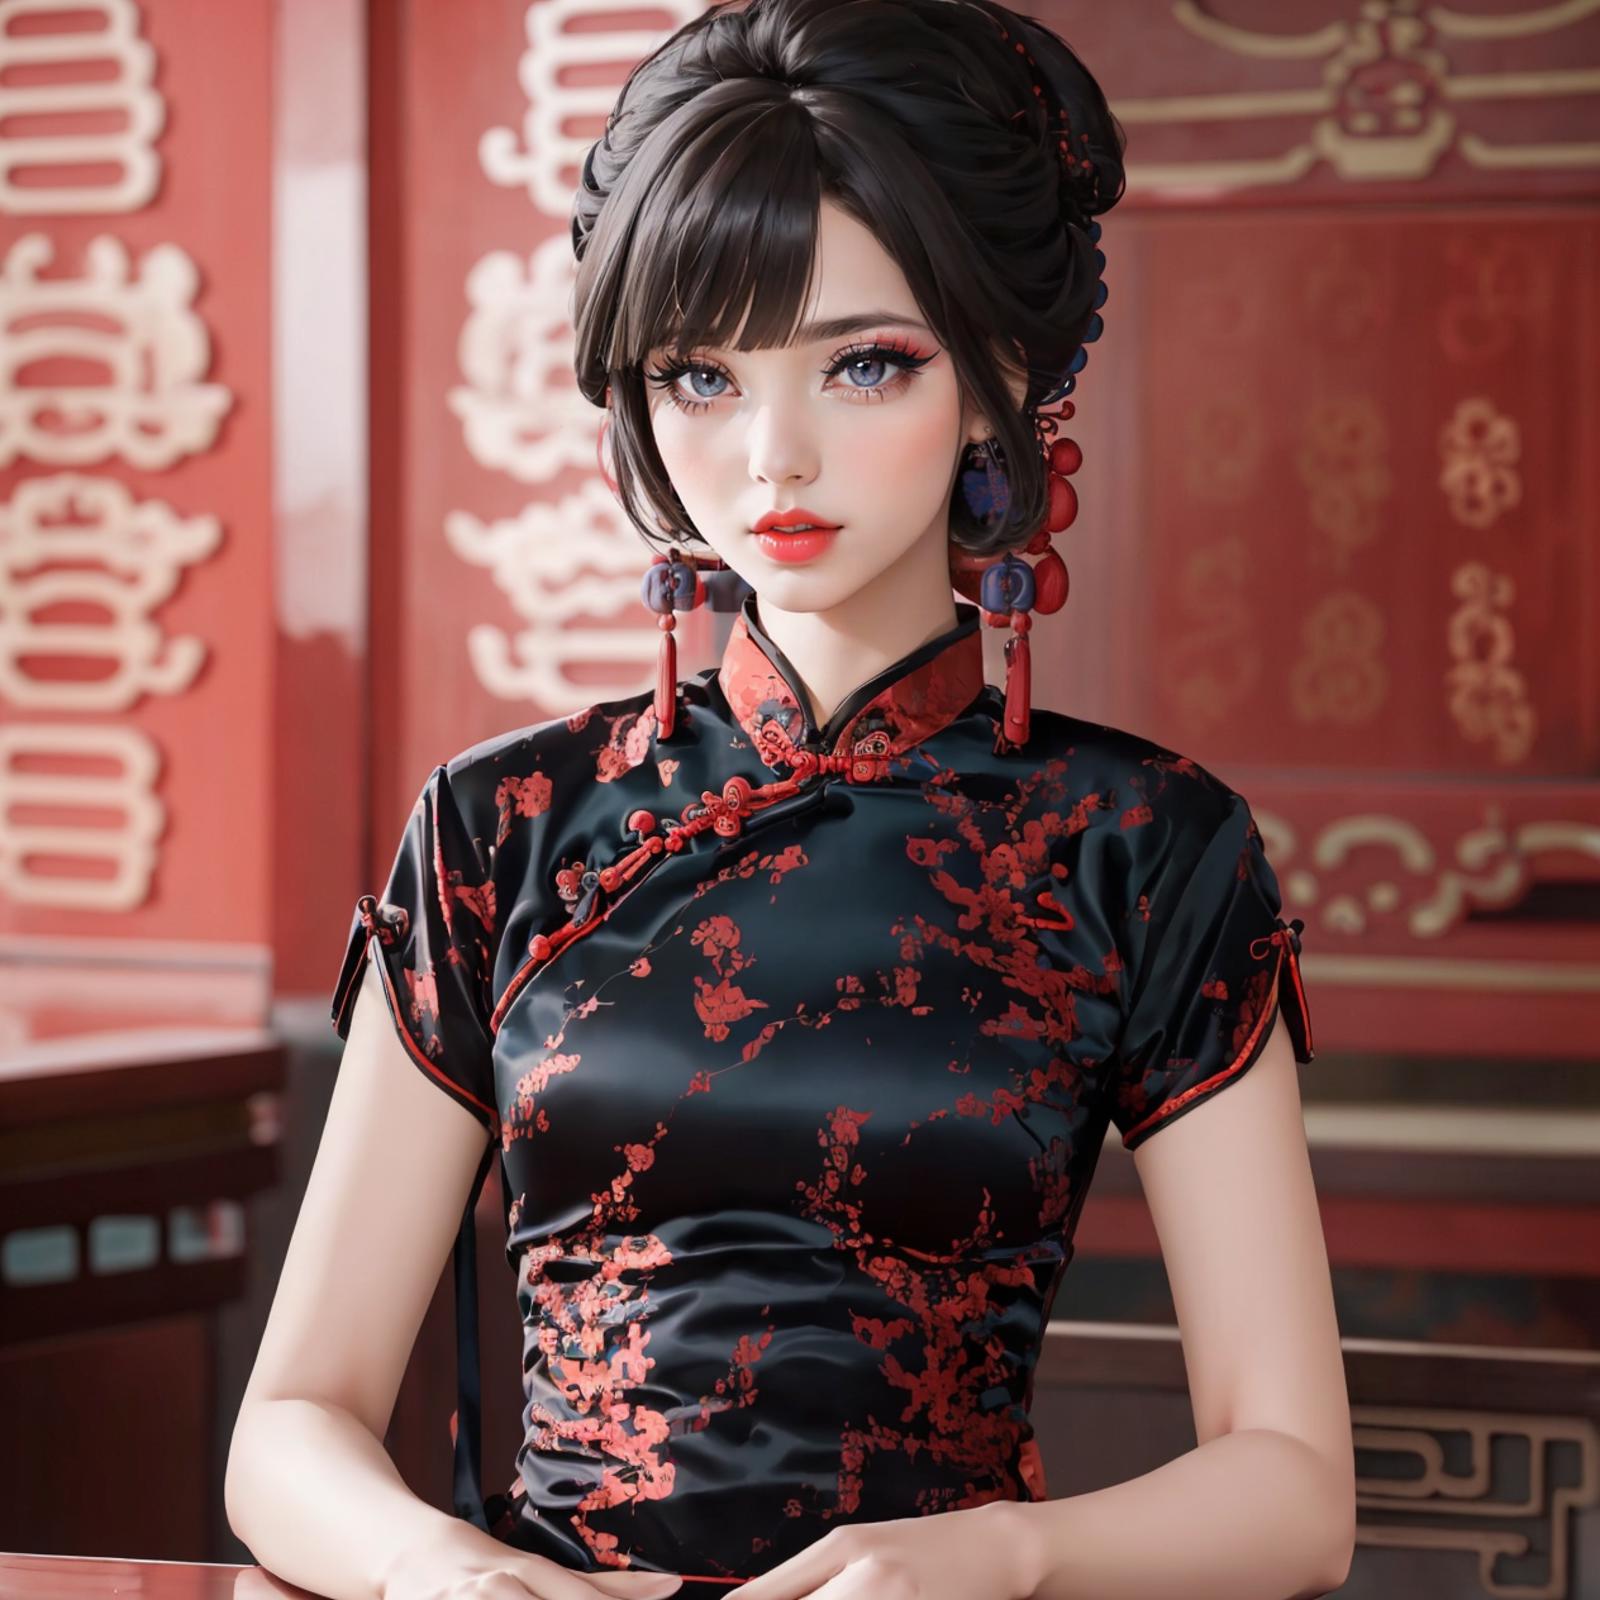 Gothic Cheongsam Dress image by headupdef